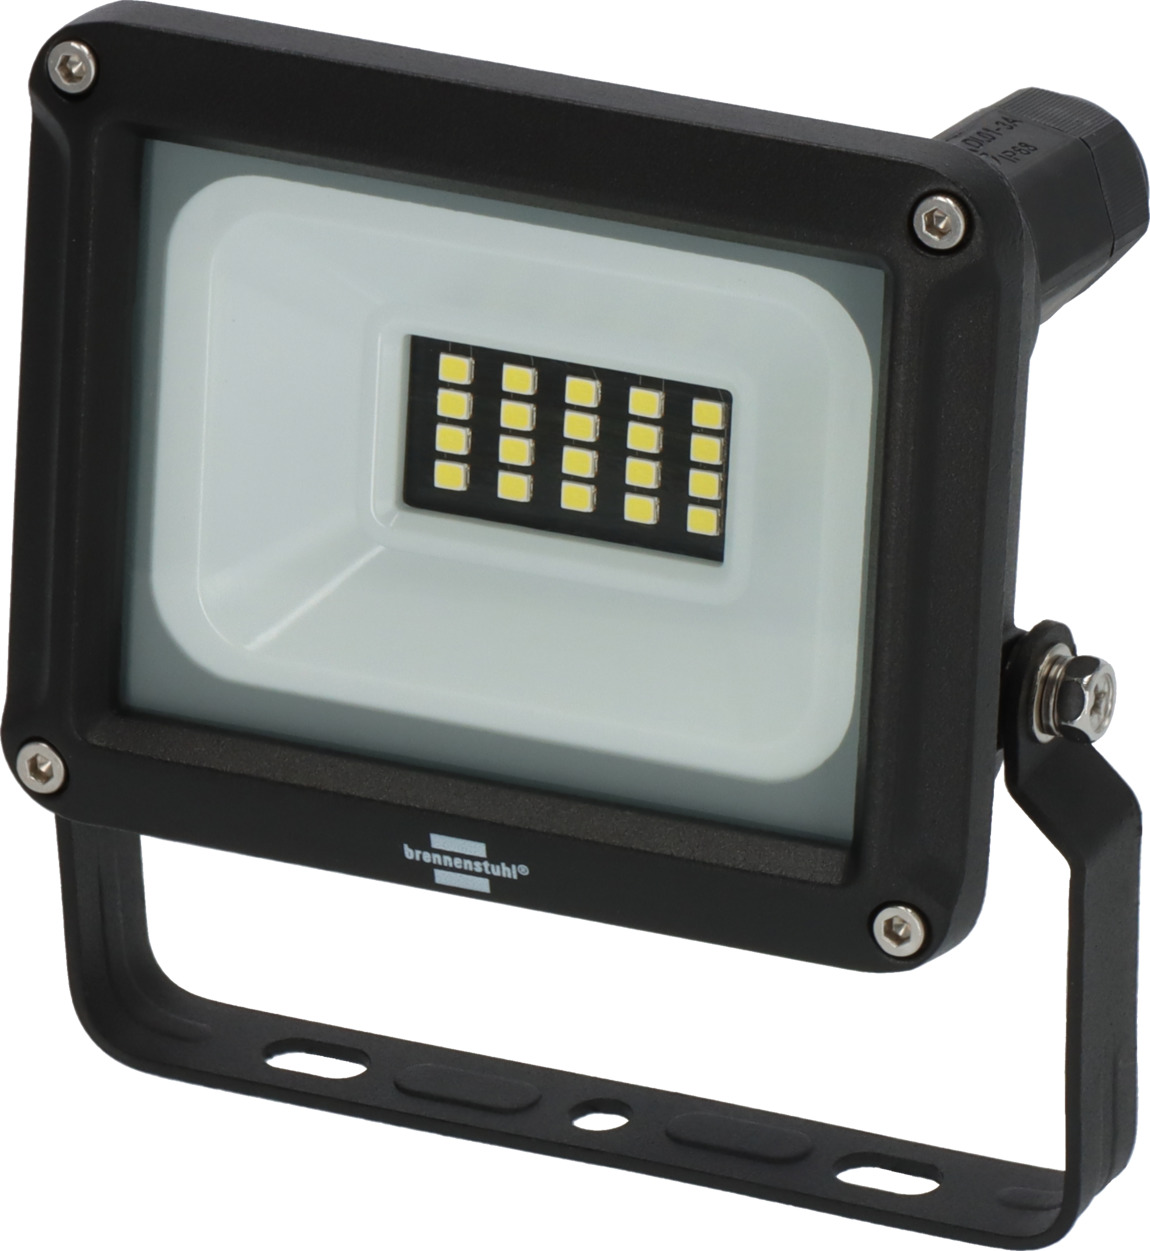 LED Strahler 1060, 10W, | IP65 brennenstuhl® 1150lm, JARO